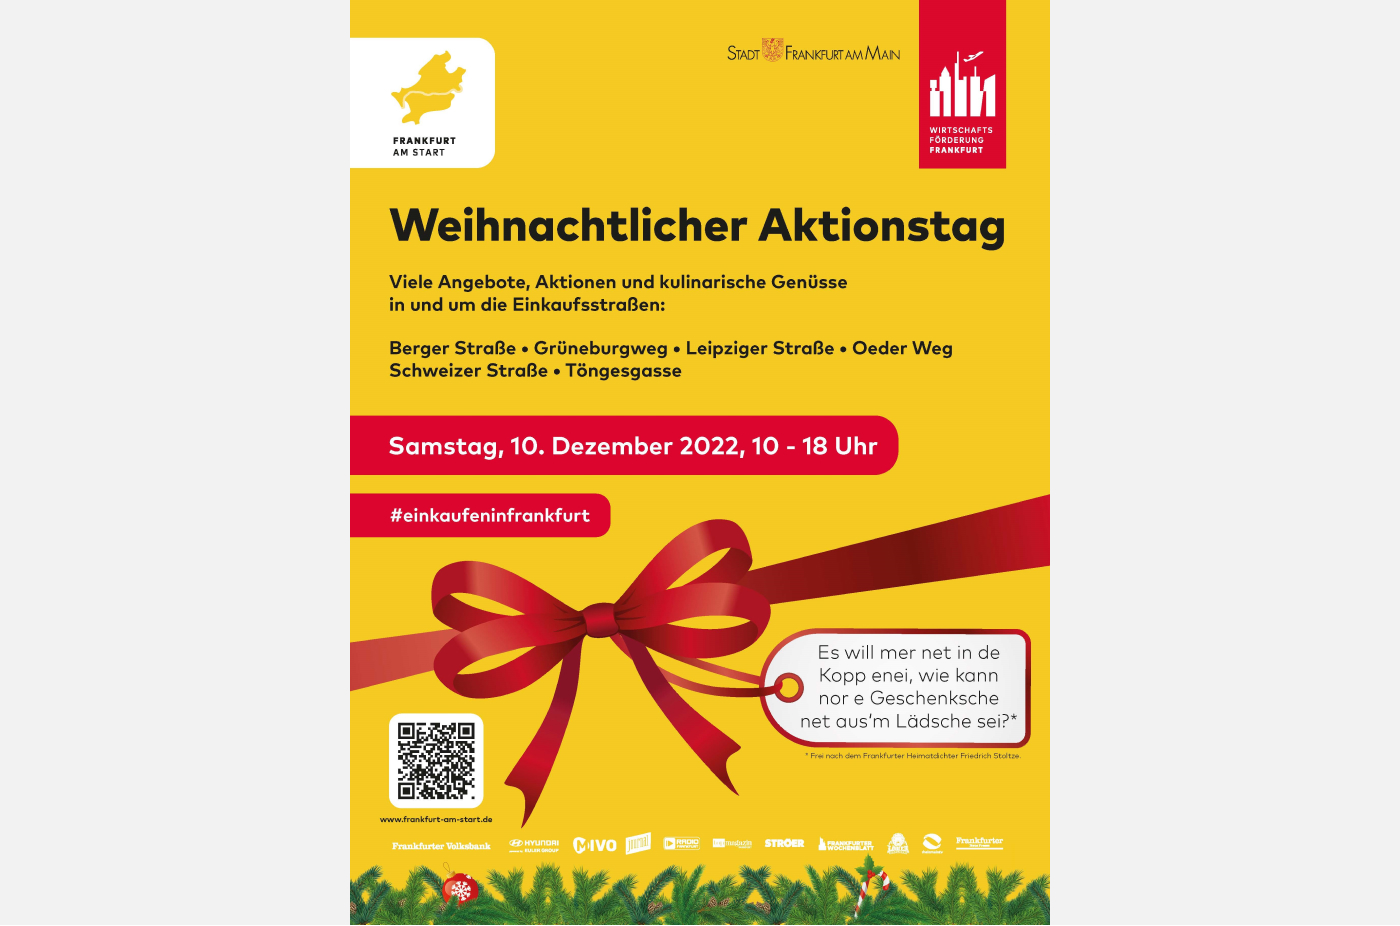 Das Plakat zum weihnachtlichen Aktionstag am 10. Dezember 2022